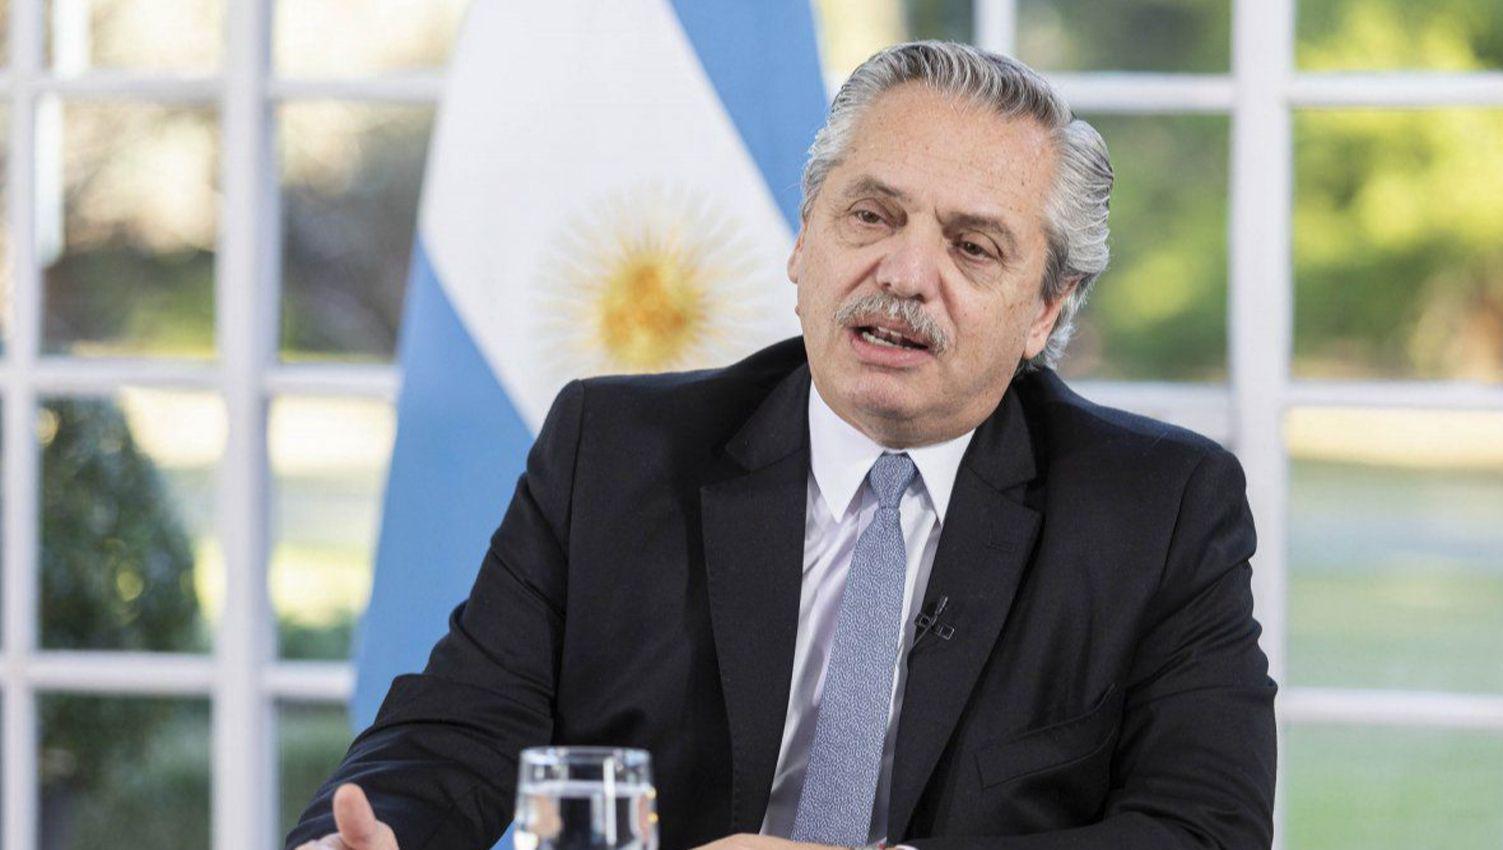 El presidente Alberto Fernaacutendez dijo que quiere ldquounir a los argentinos maacutes allaacute de las banderiacuteas poliacuteticasrdquo